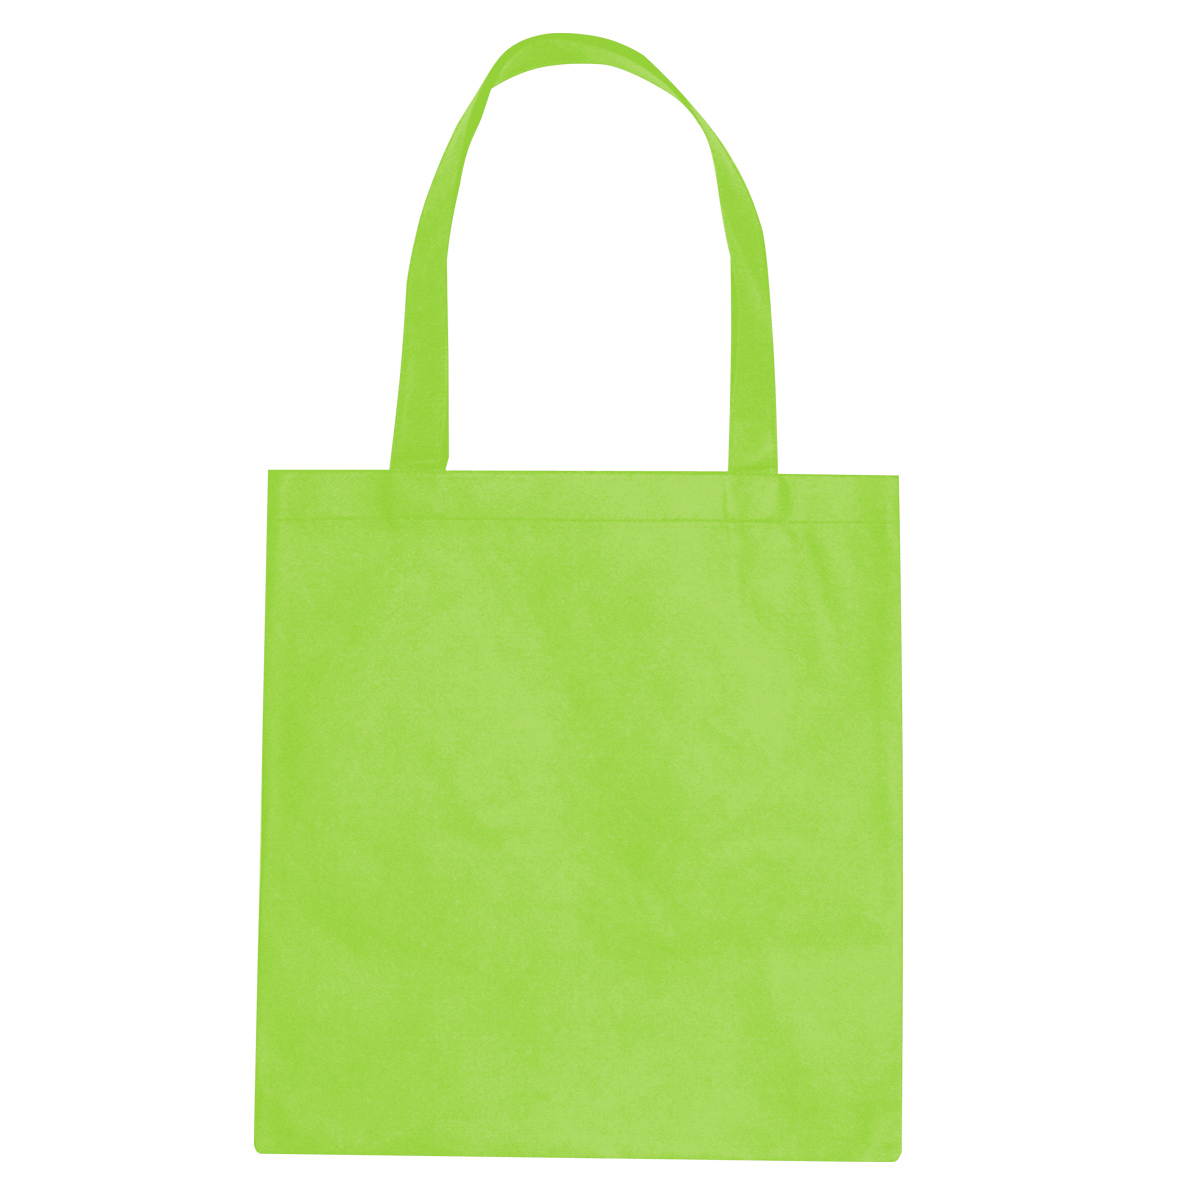 Tote Bag Vector at GetDrawings | Free download